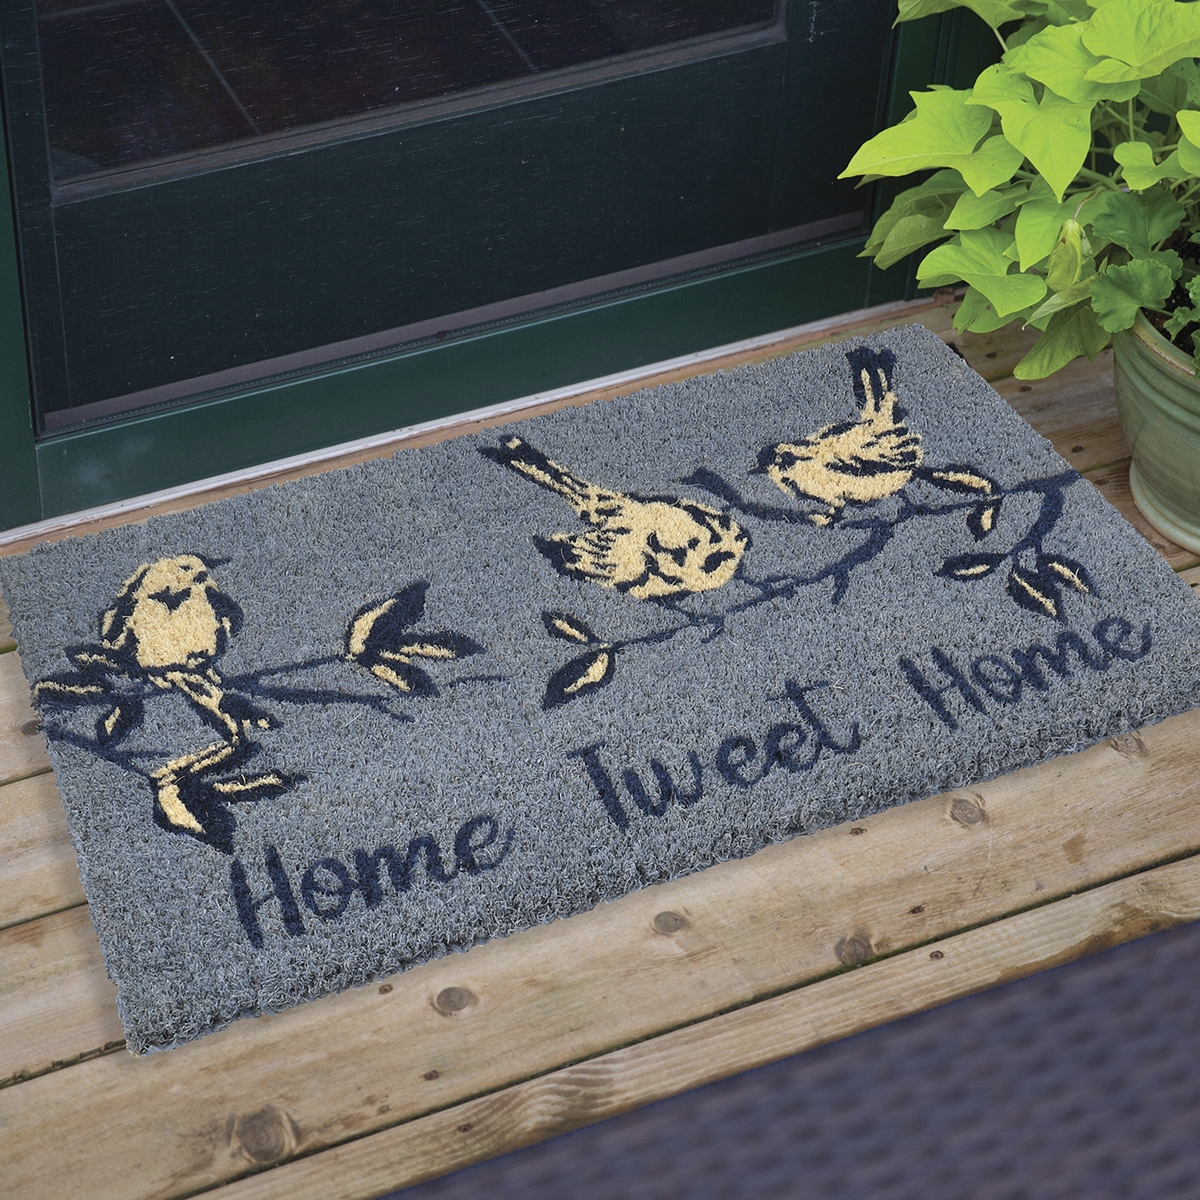 Home View Doormat